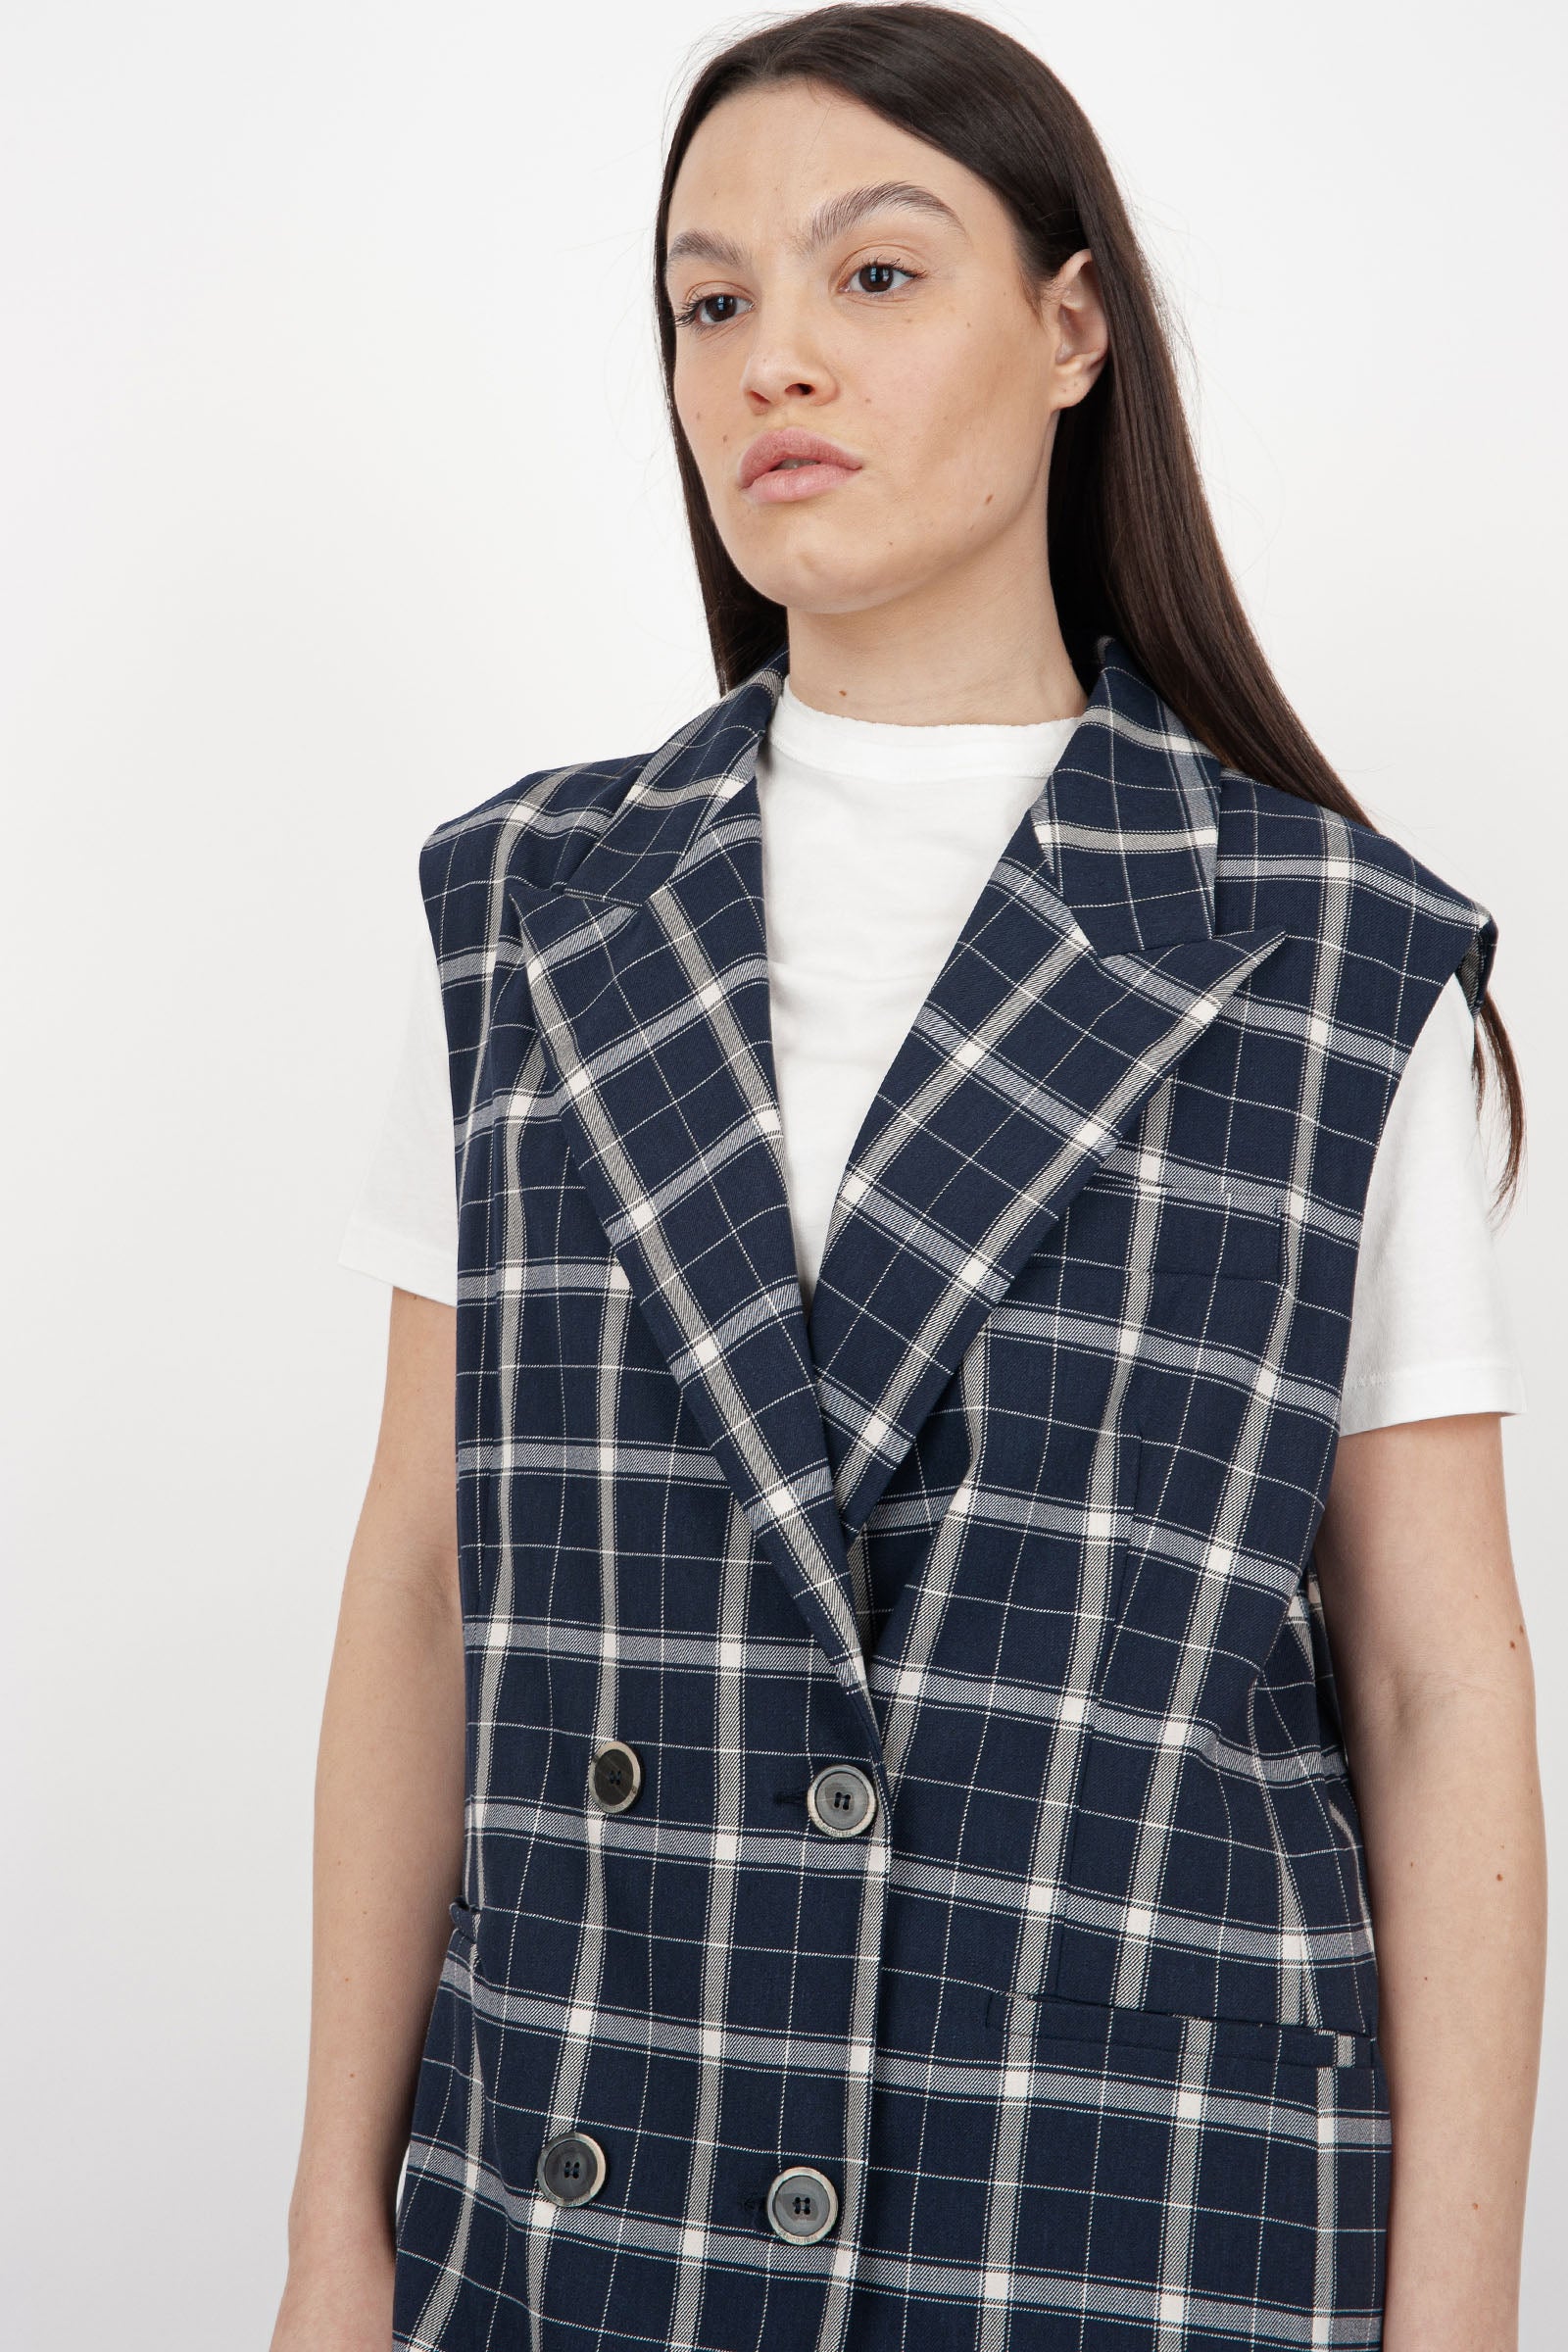 SemiCouture Alisha Synthetic Vest in Cream - 1